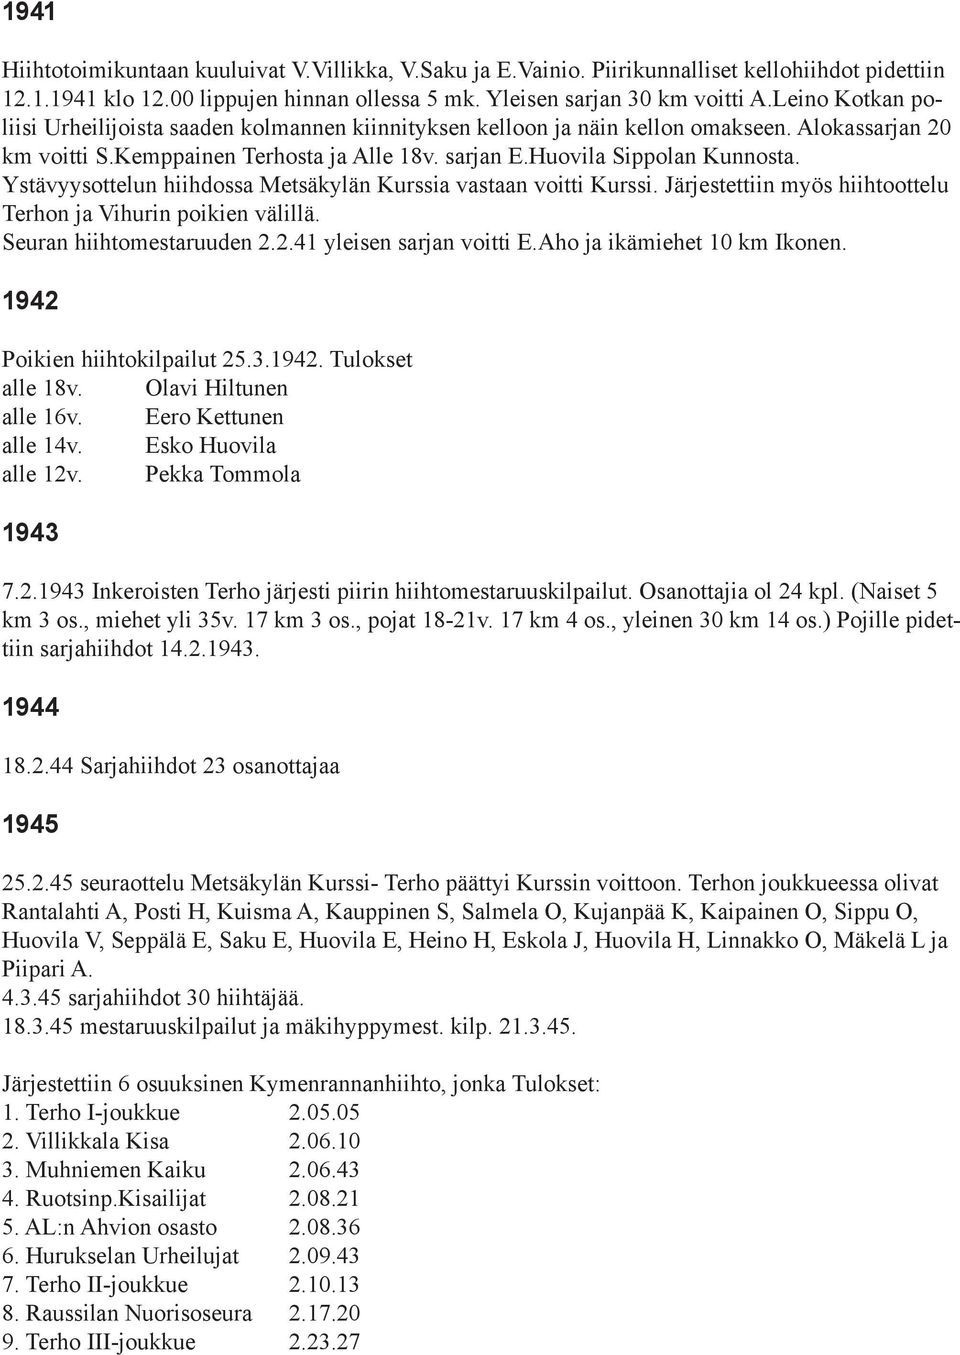 Ystävyysottelun hiihdossa Metsäkylän Kurssia vastaan voitti Kurssi. Järjestettiin myös hiihtoottelu Terhon ja Vihurin poikien välillä. Seuran hiihtomestaruuden 2.2.41 yleisen sarjan voitti E.